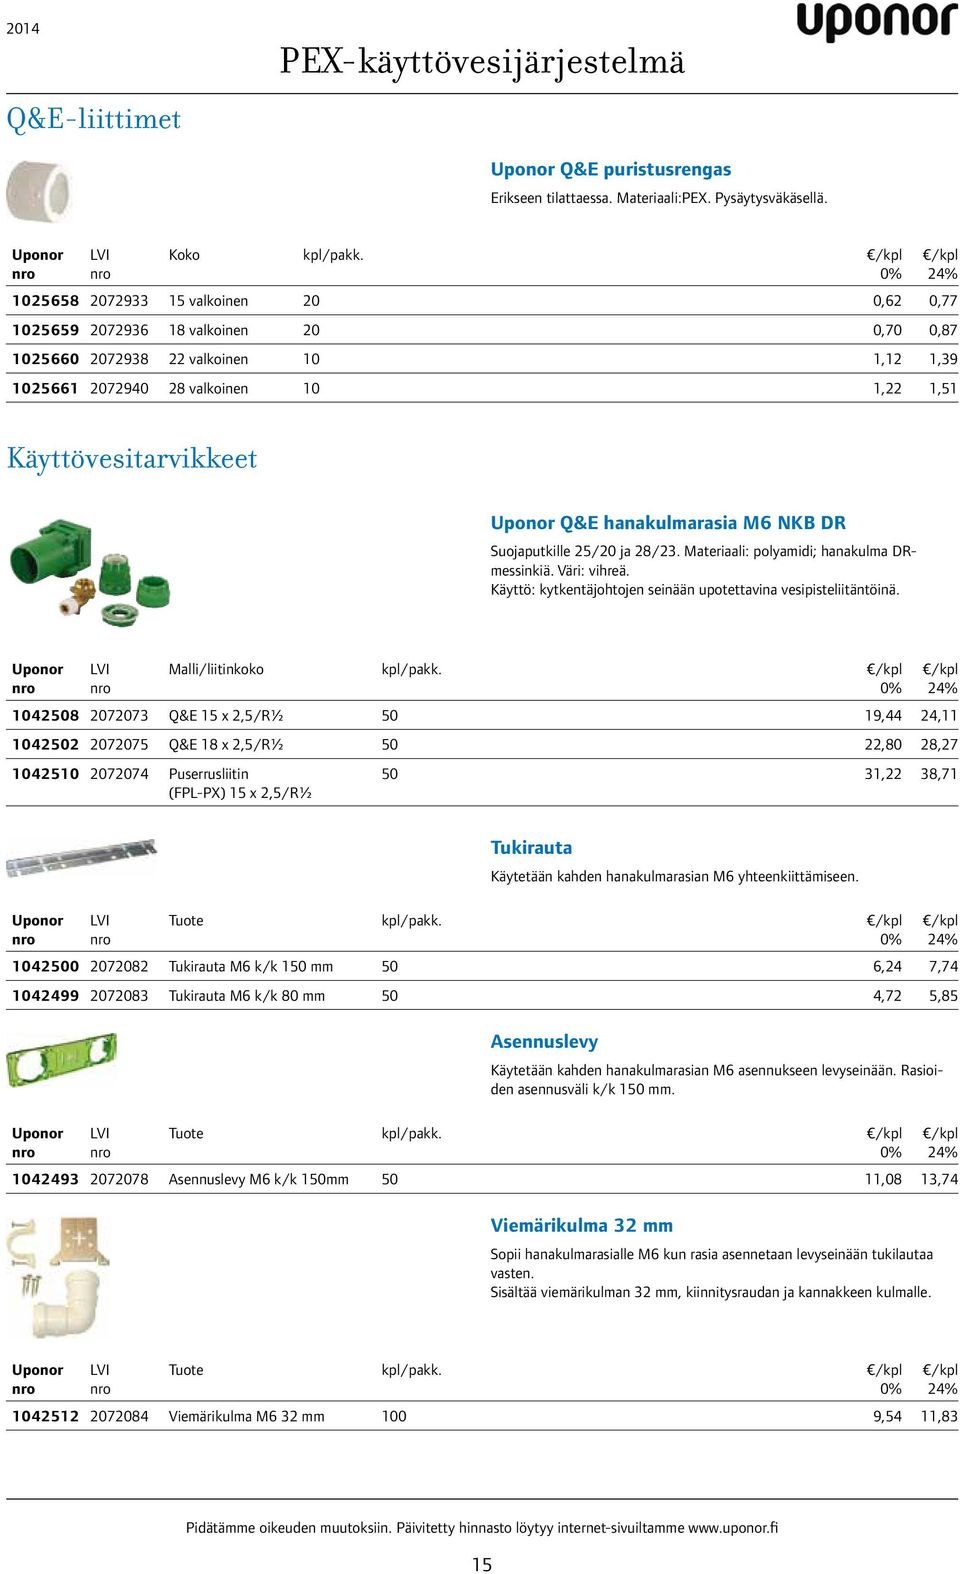 hanakulmarasia M6 NKB DR Suojaputkille 25/20 ja 28/23. Materiaali: polyamidi; hanakulma DRmessinkiä. Väri: vihreä. Käyttö: kytkentäjohtojen seinään upotettavina vesipisteliitäntöinä.